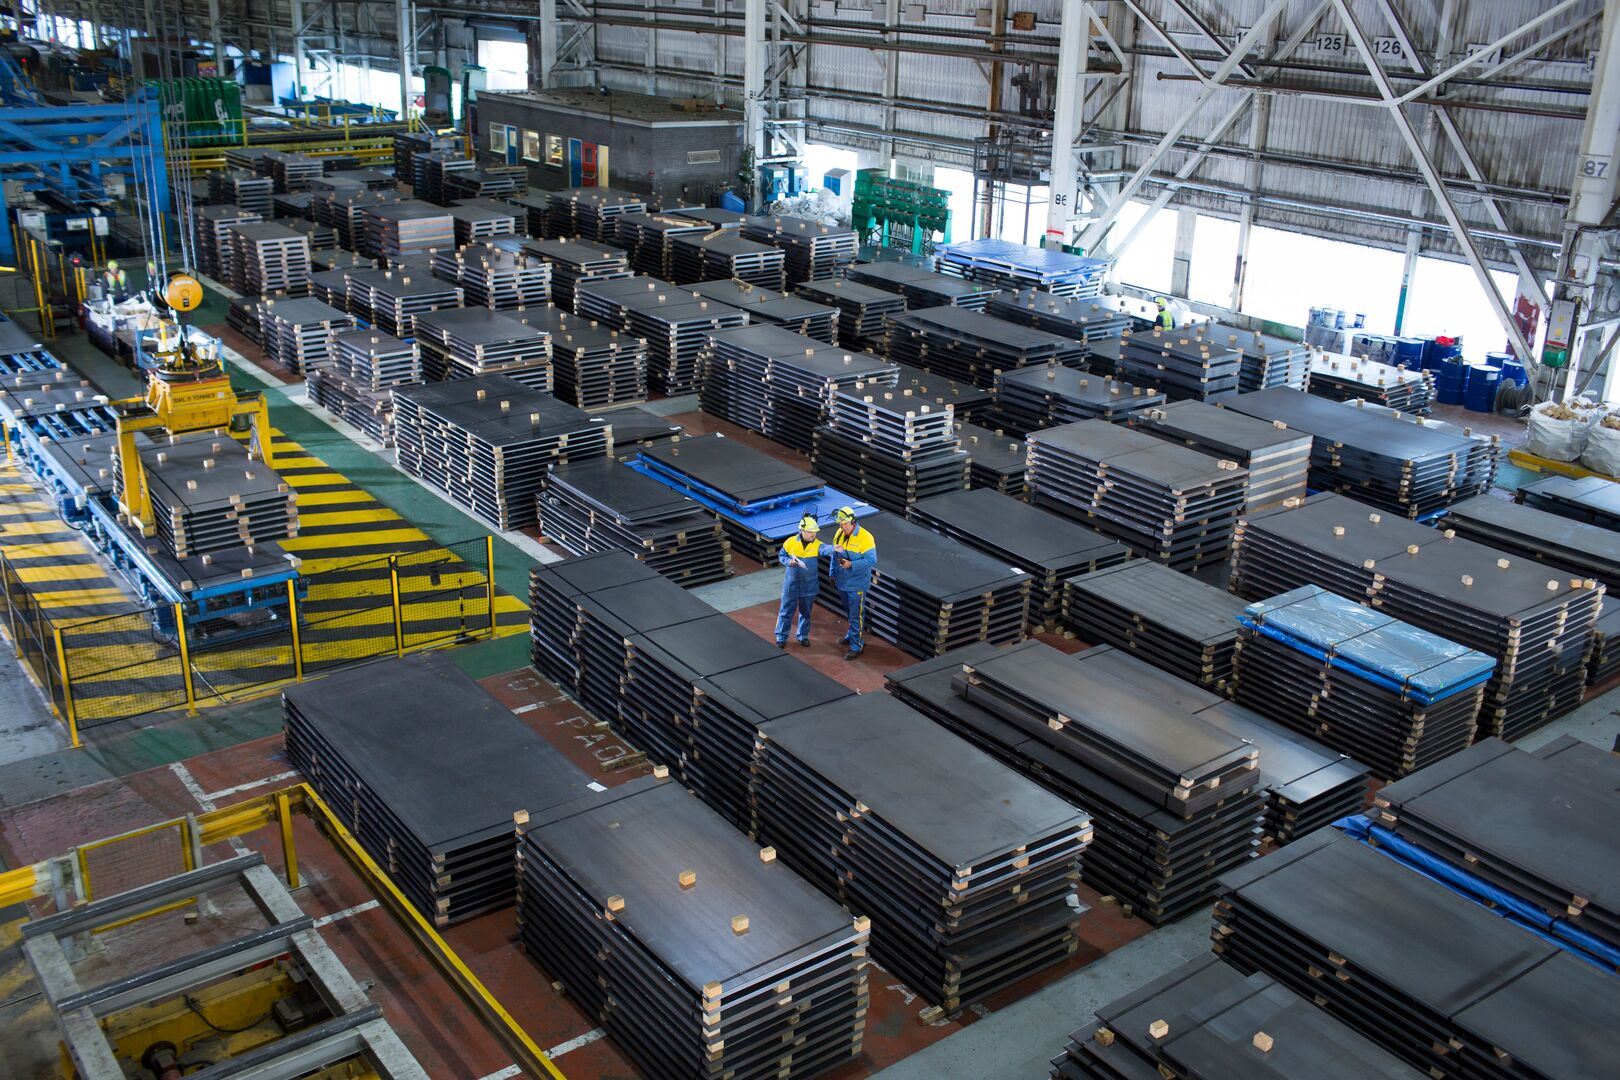 Tayvan ana metal ihracat hacmi Ekim ayına göre %3,5 arttı